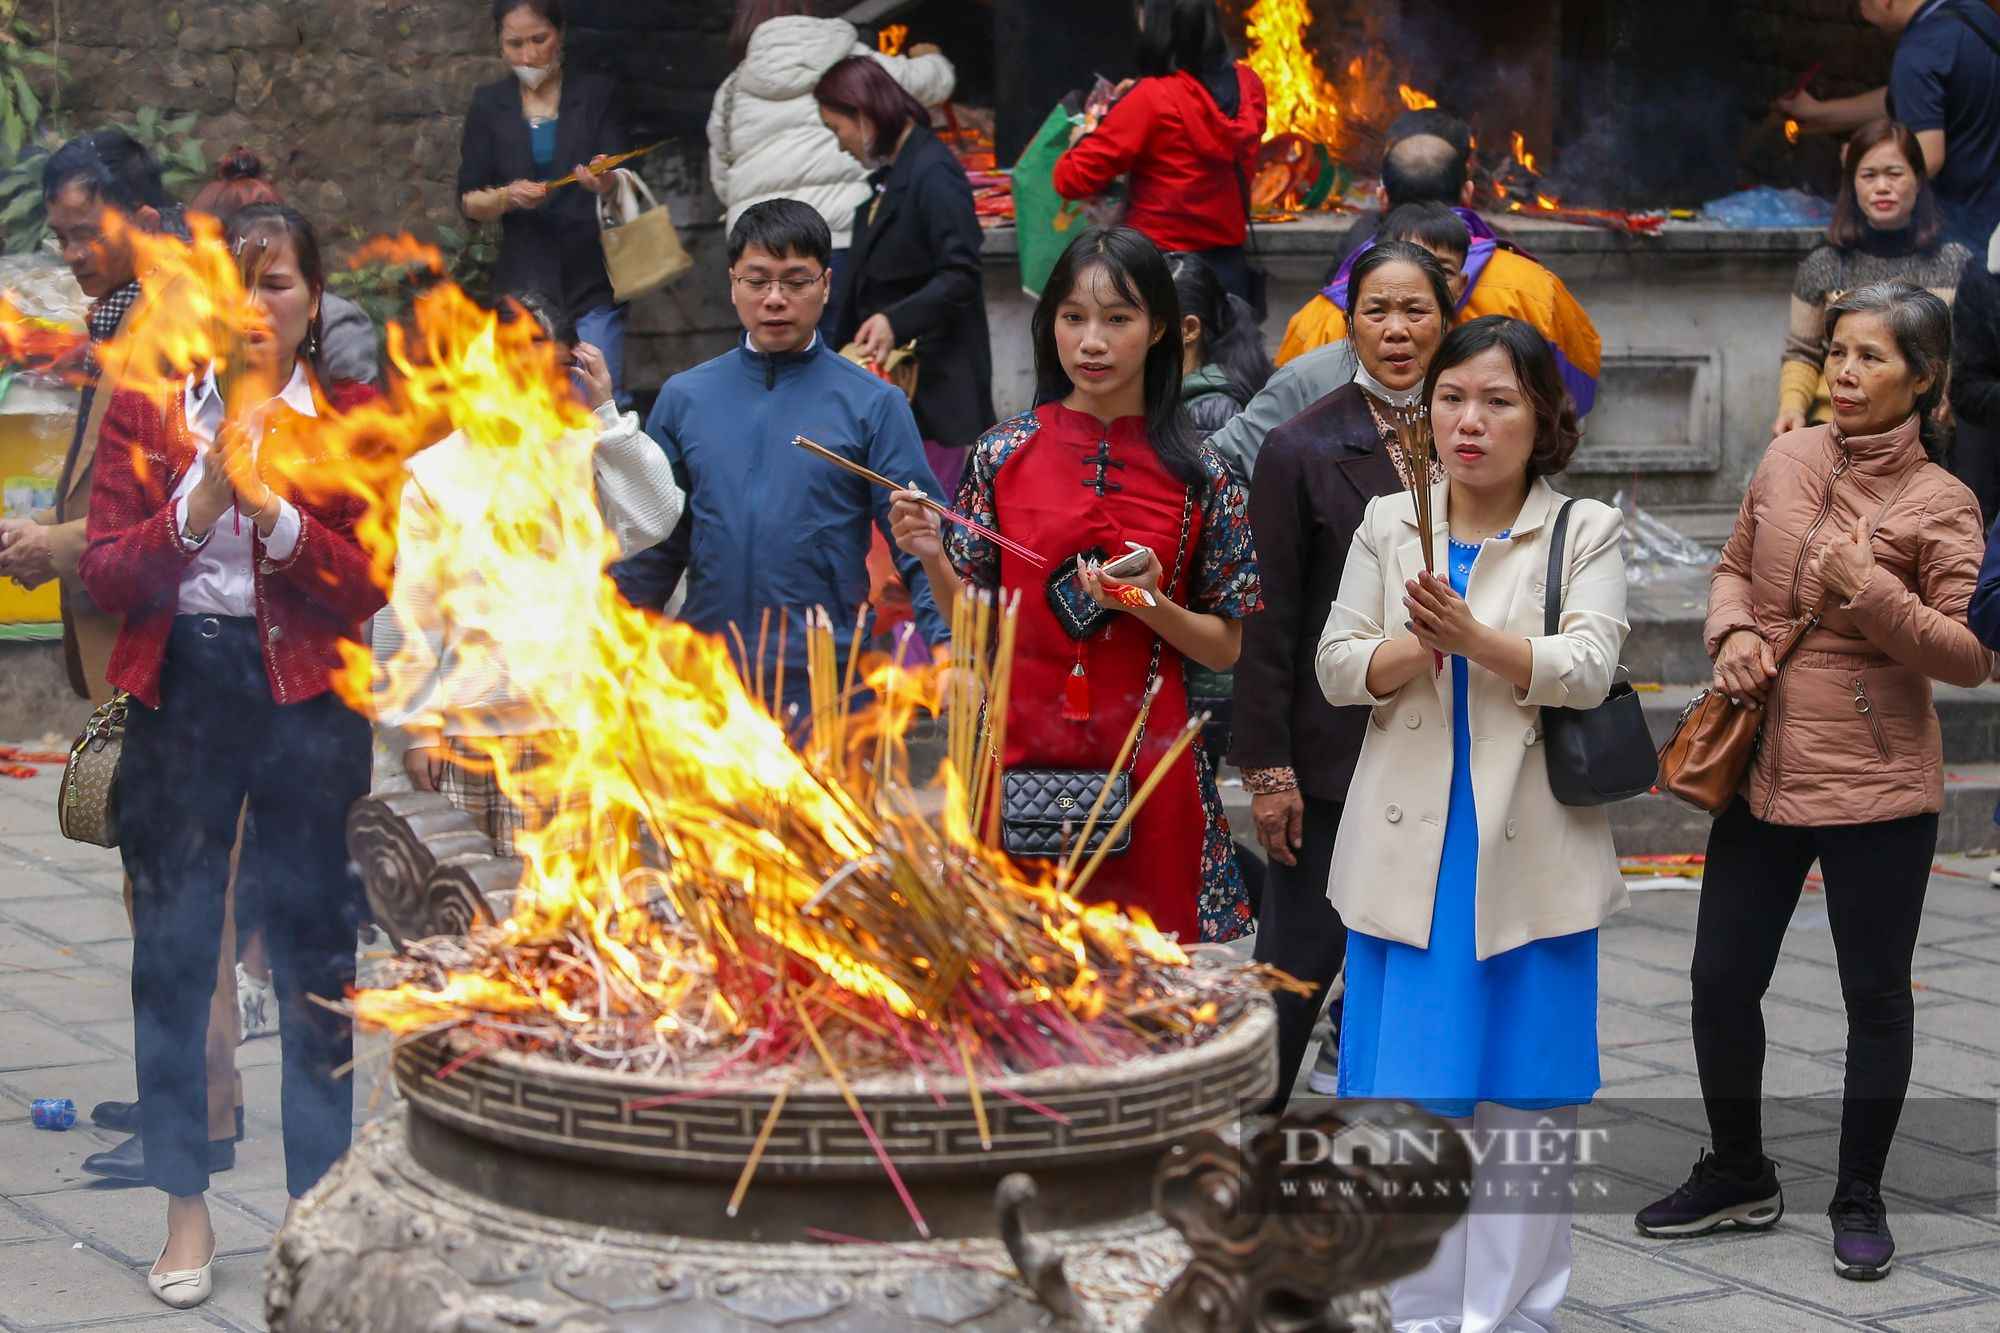 
Hàng vạn người dân thập phương đi lễ đền Hùng cầu may ngày đầu xuân - Ảnh 6.